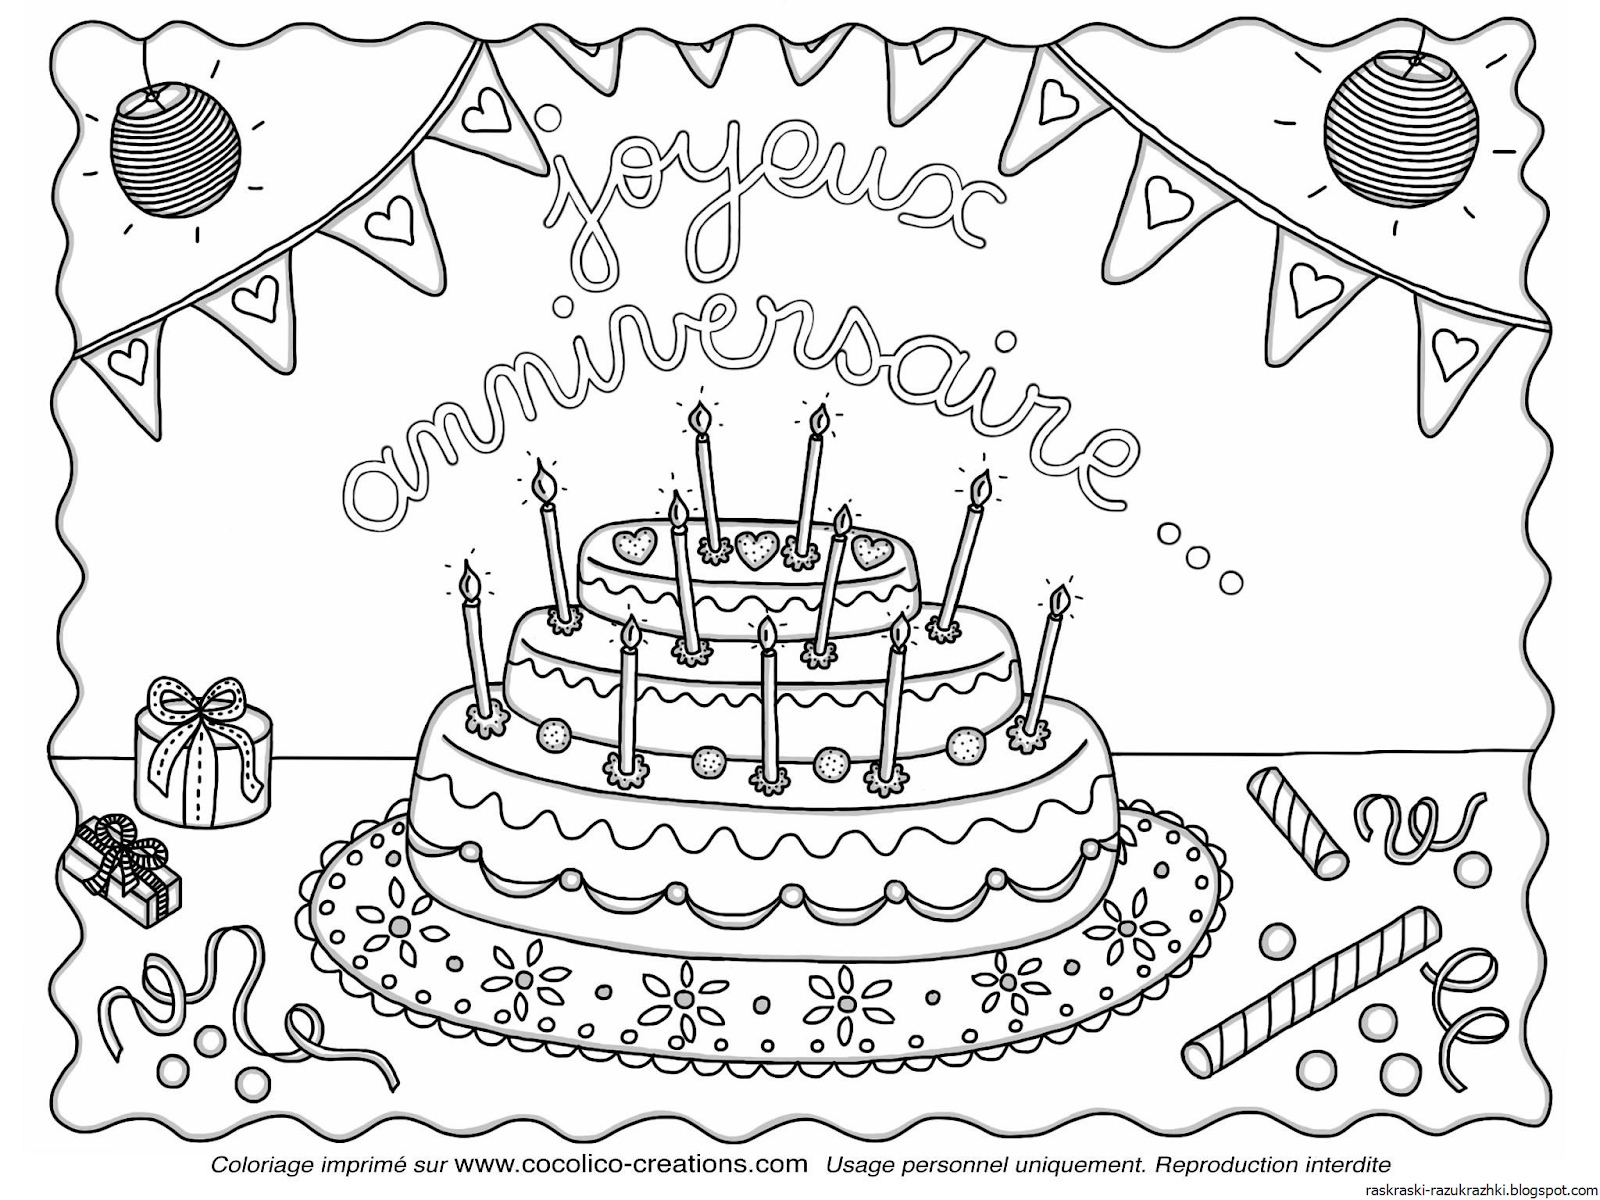 Рисунок на день рождения. Раскраска "с днем рождения!". Рисунки для раскрашивания с днем рождения. Рисунок на день рождения легкий. Что можно дедушке нарисовать на день рождения